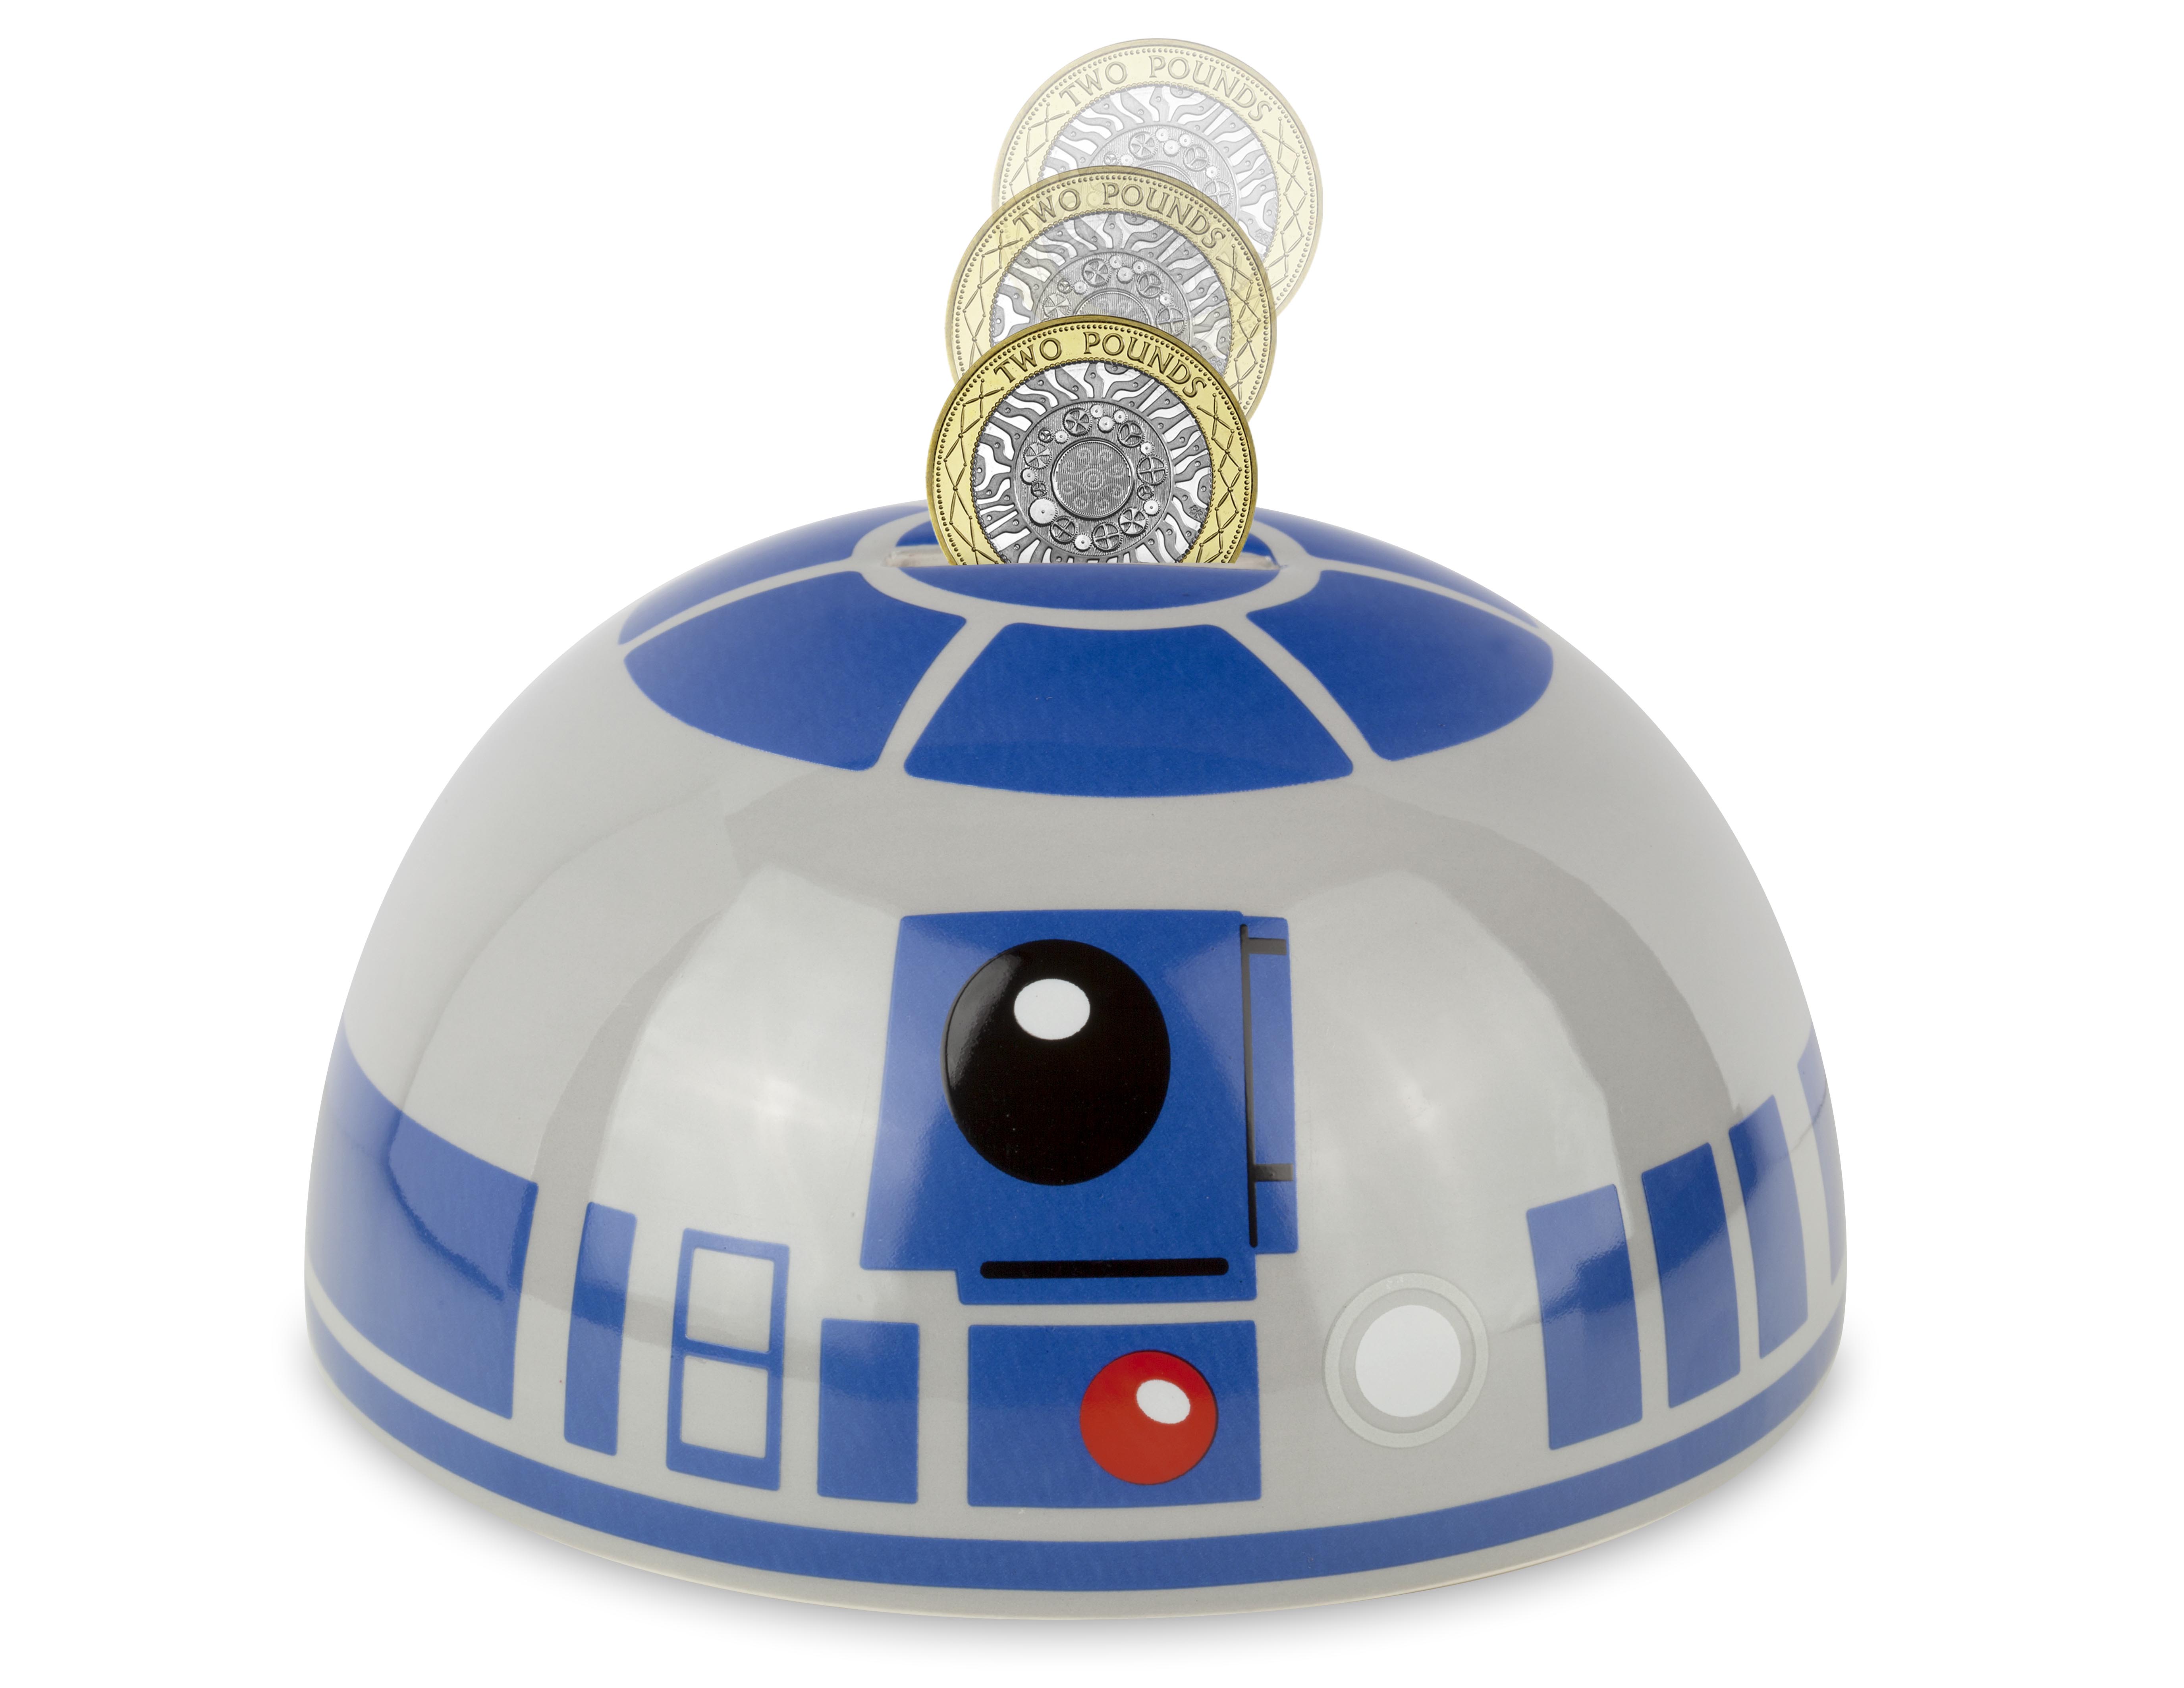 Star Wars SW Tirelire Ceramique Tete R2-D2